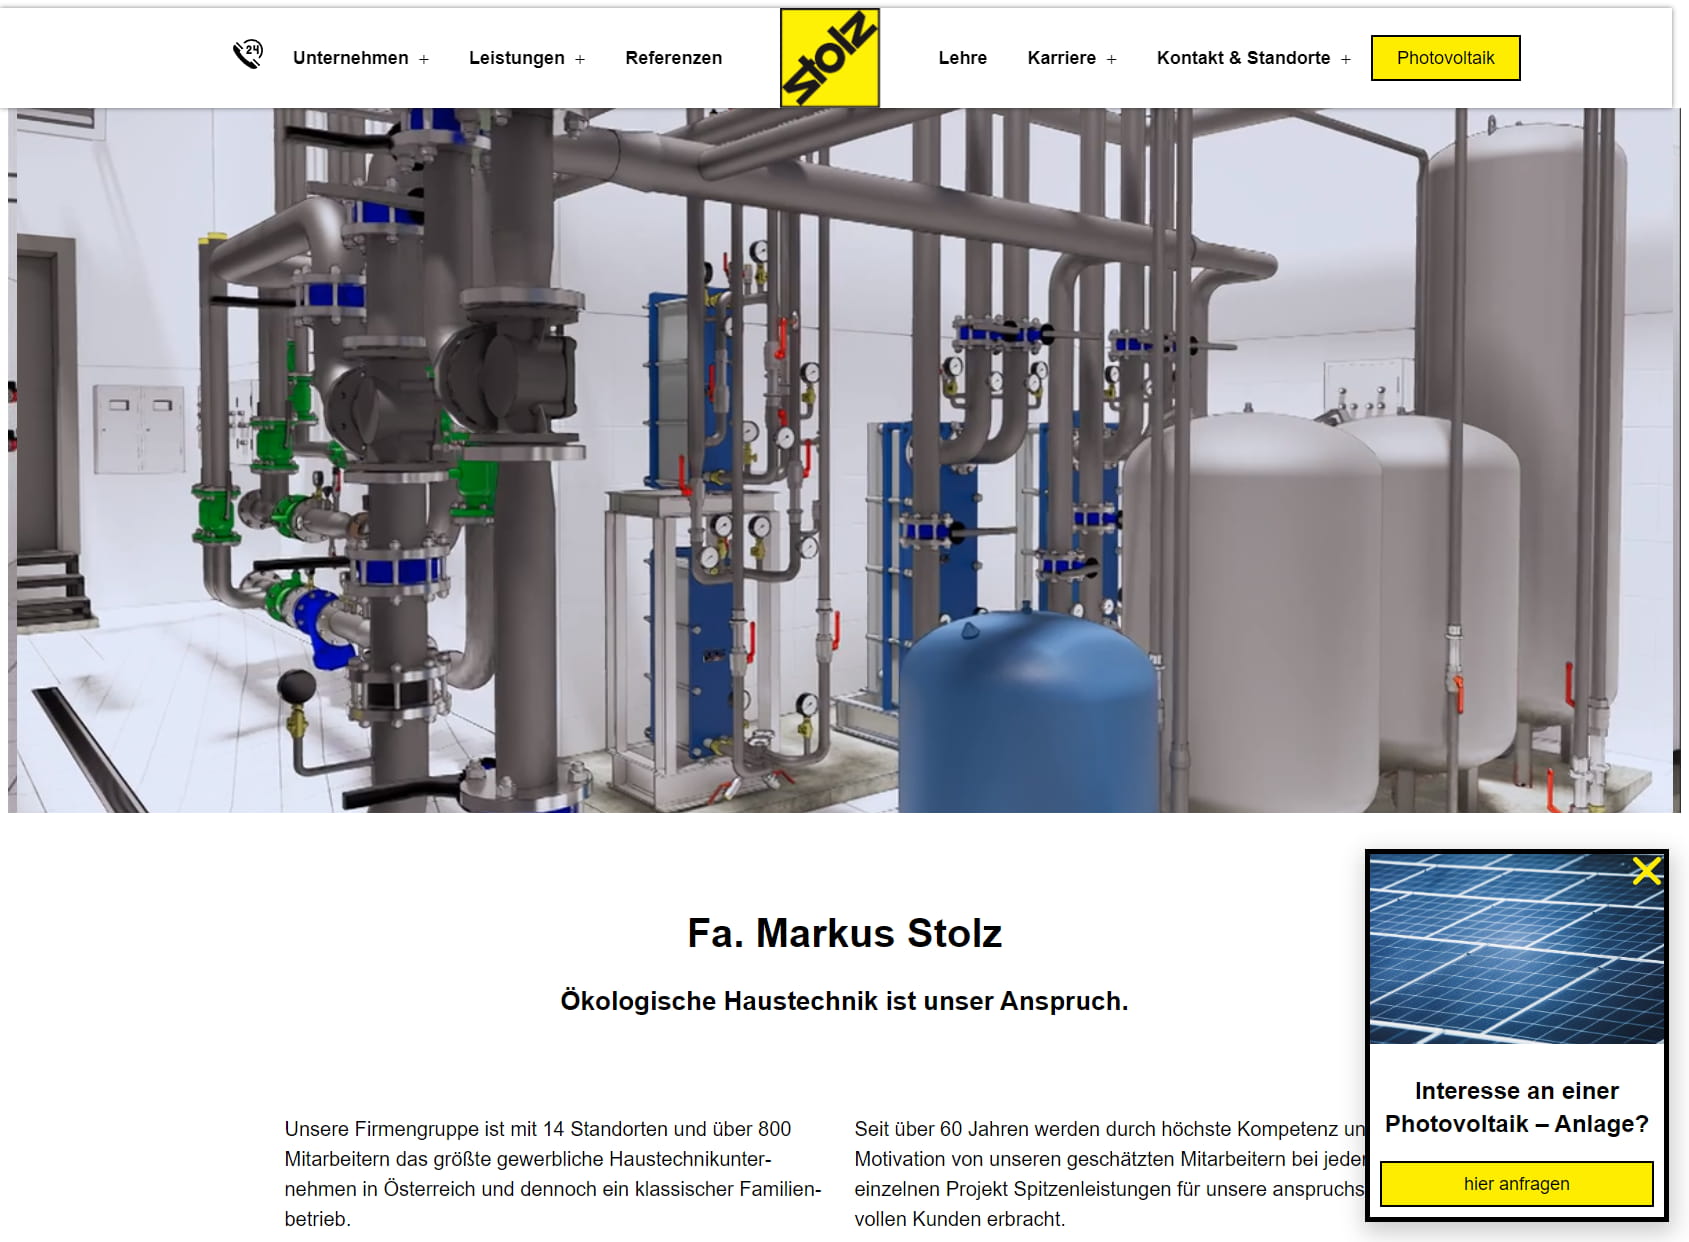 Markus Stolz GmbH & Co. KG.